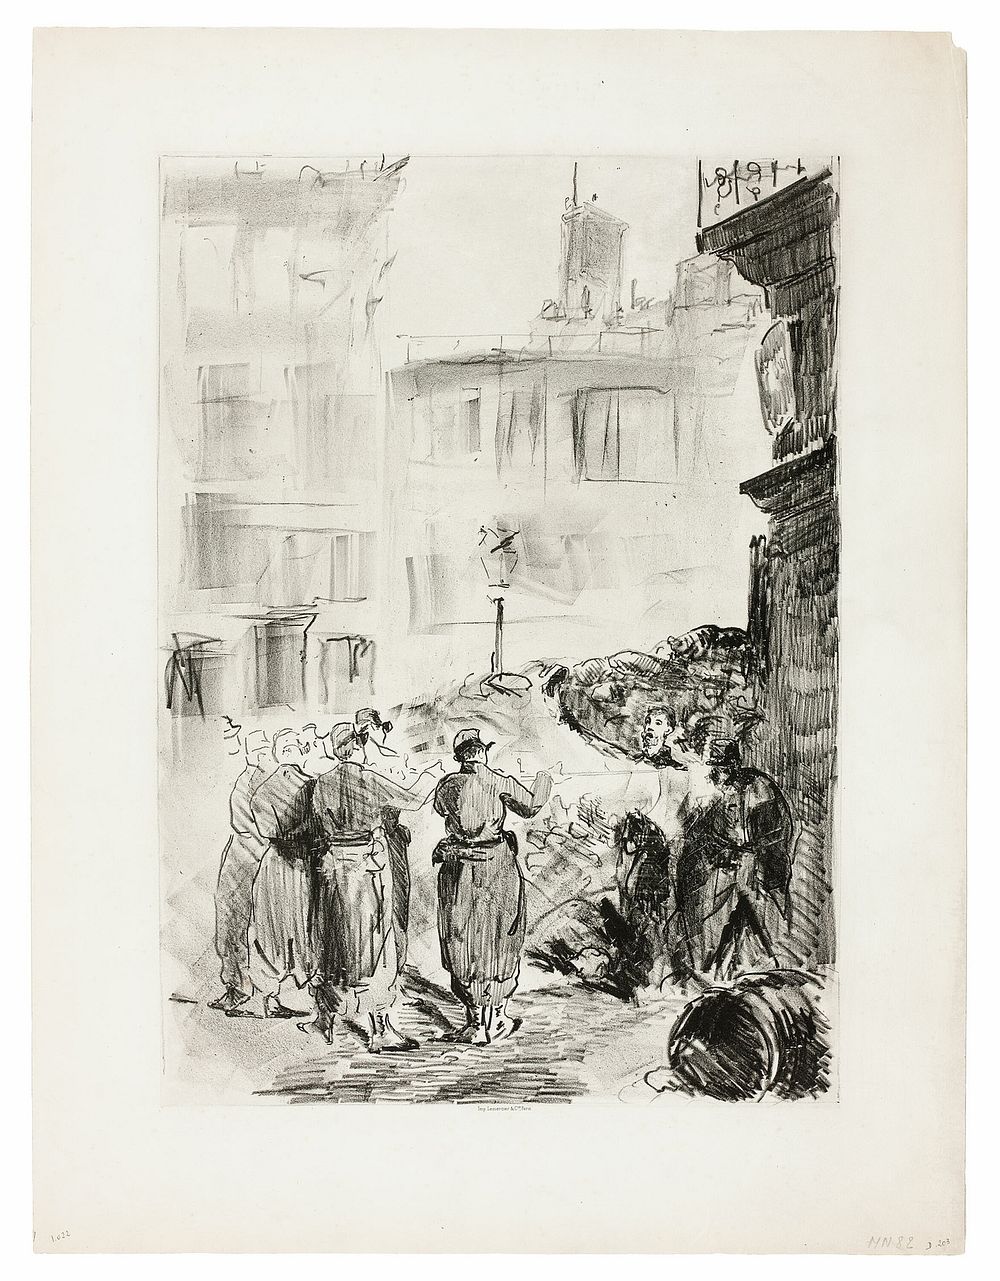 The Barricade by Édouard Manet